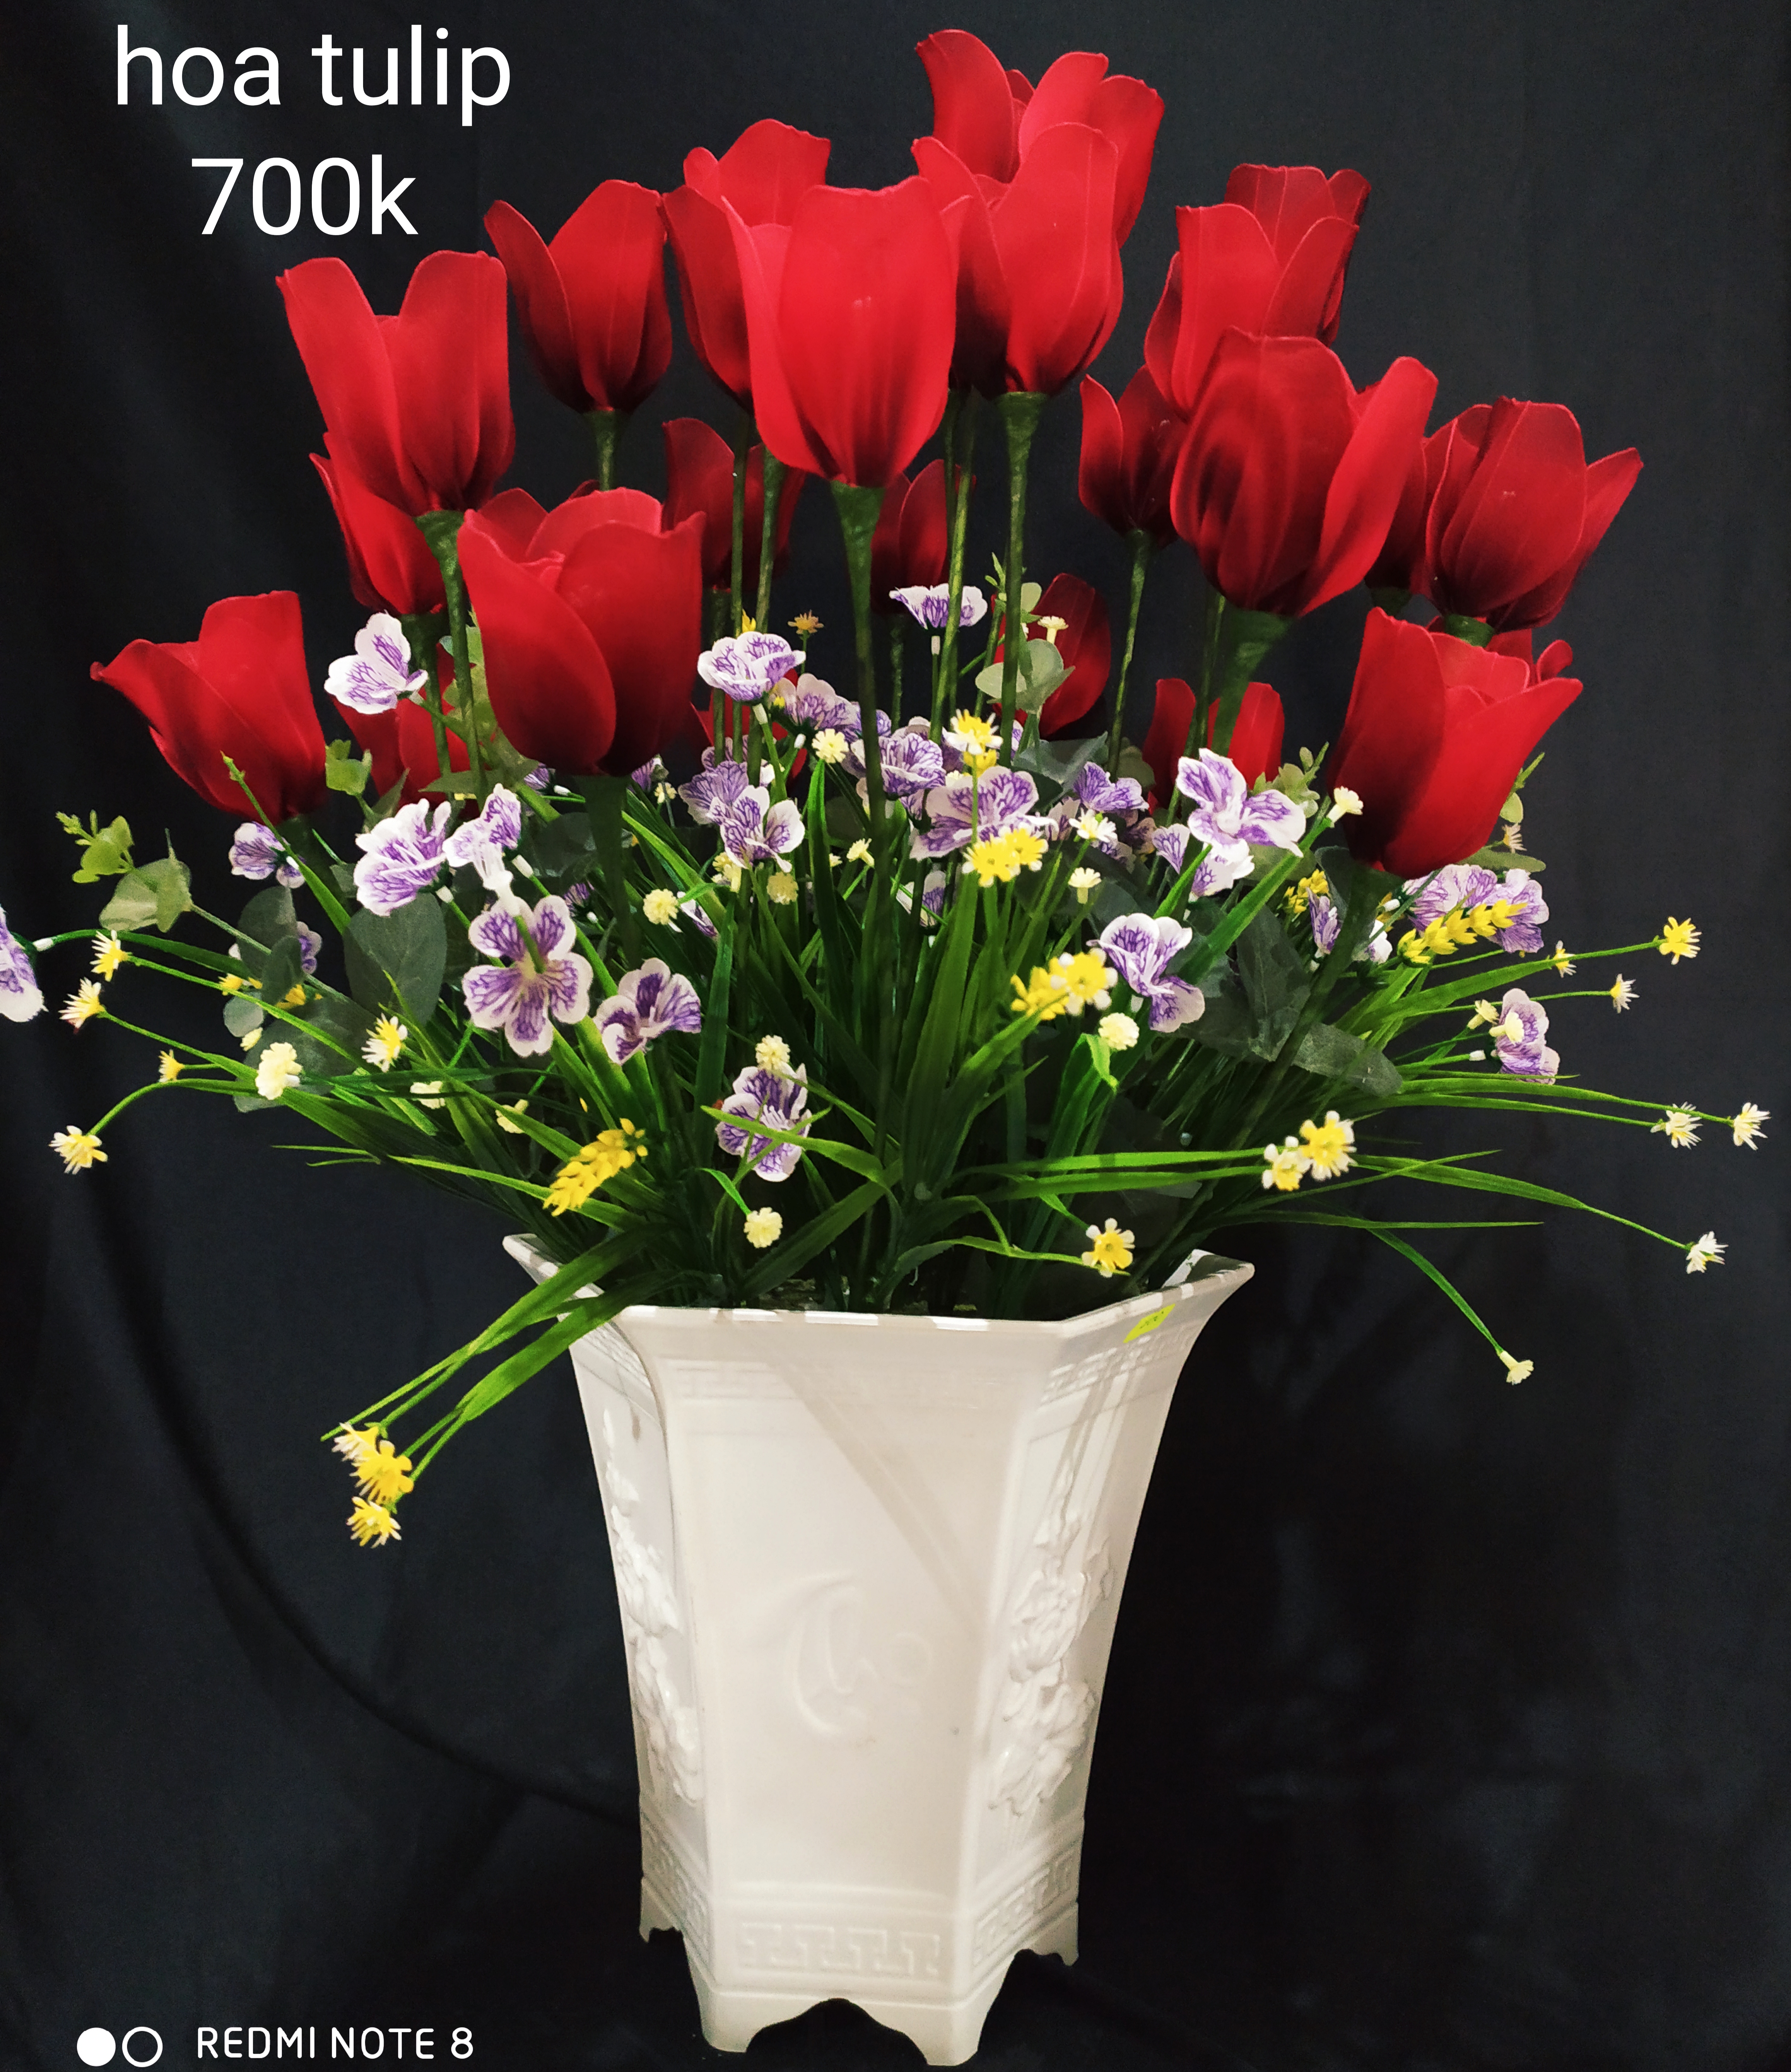 Hoa tulips